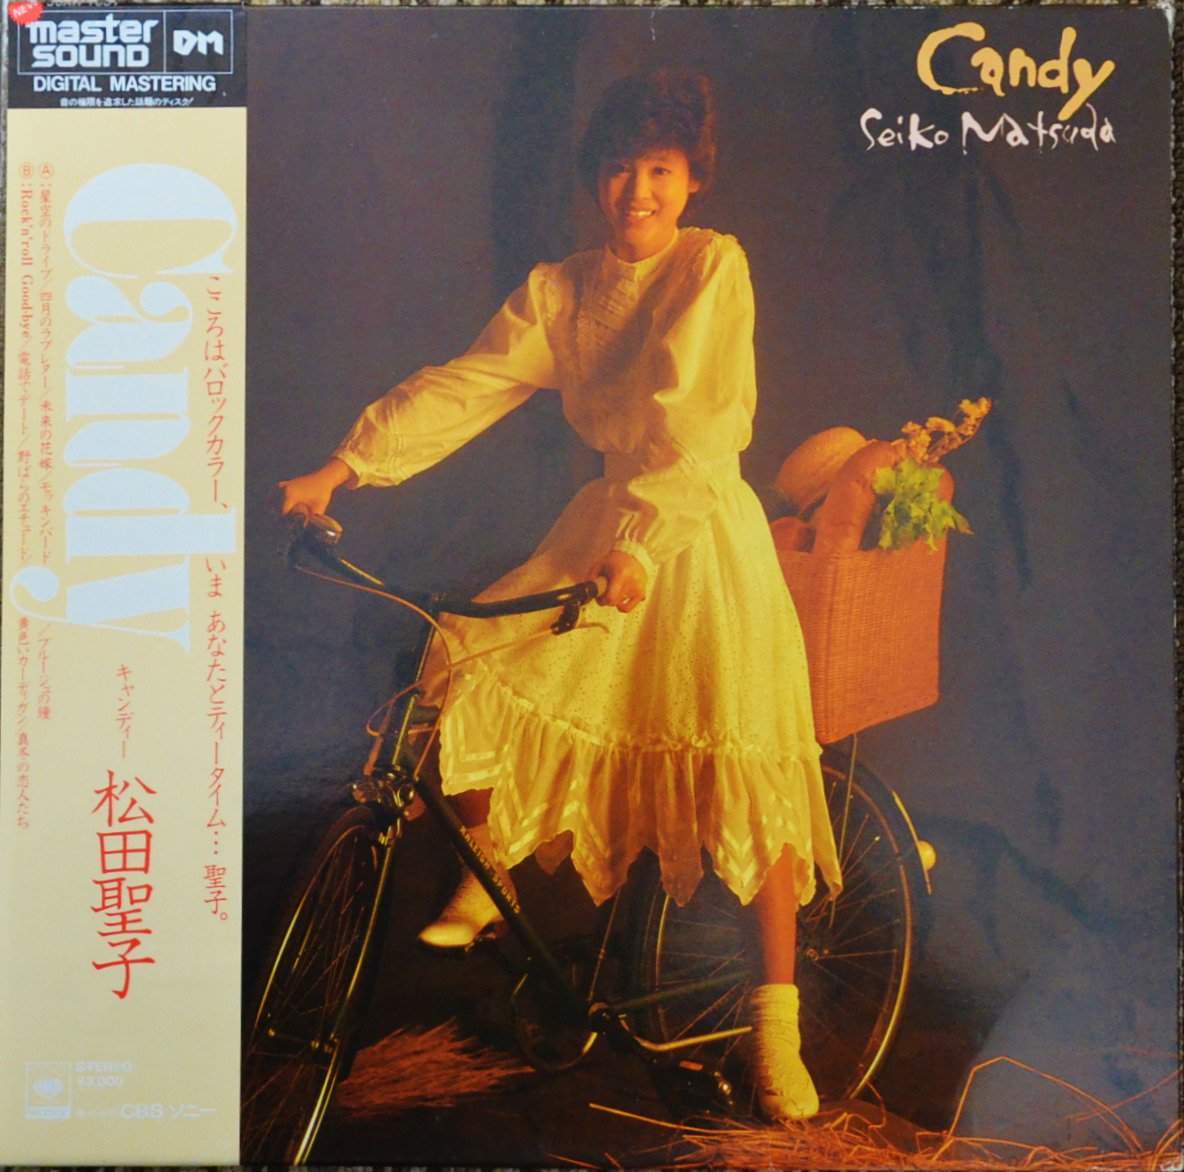 松田聖子 SEIKO MATSUDA / キャンディー CANDY (LP) - HIP TANK RECORDS